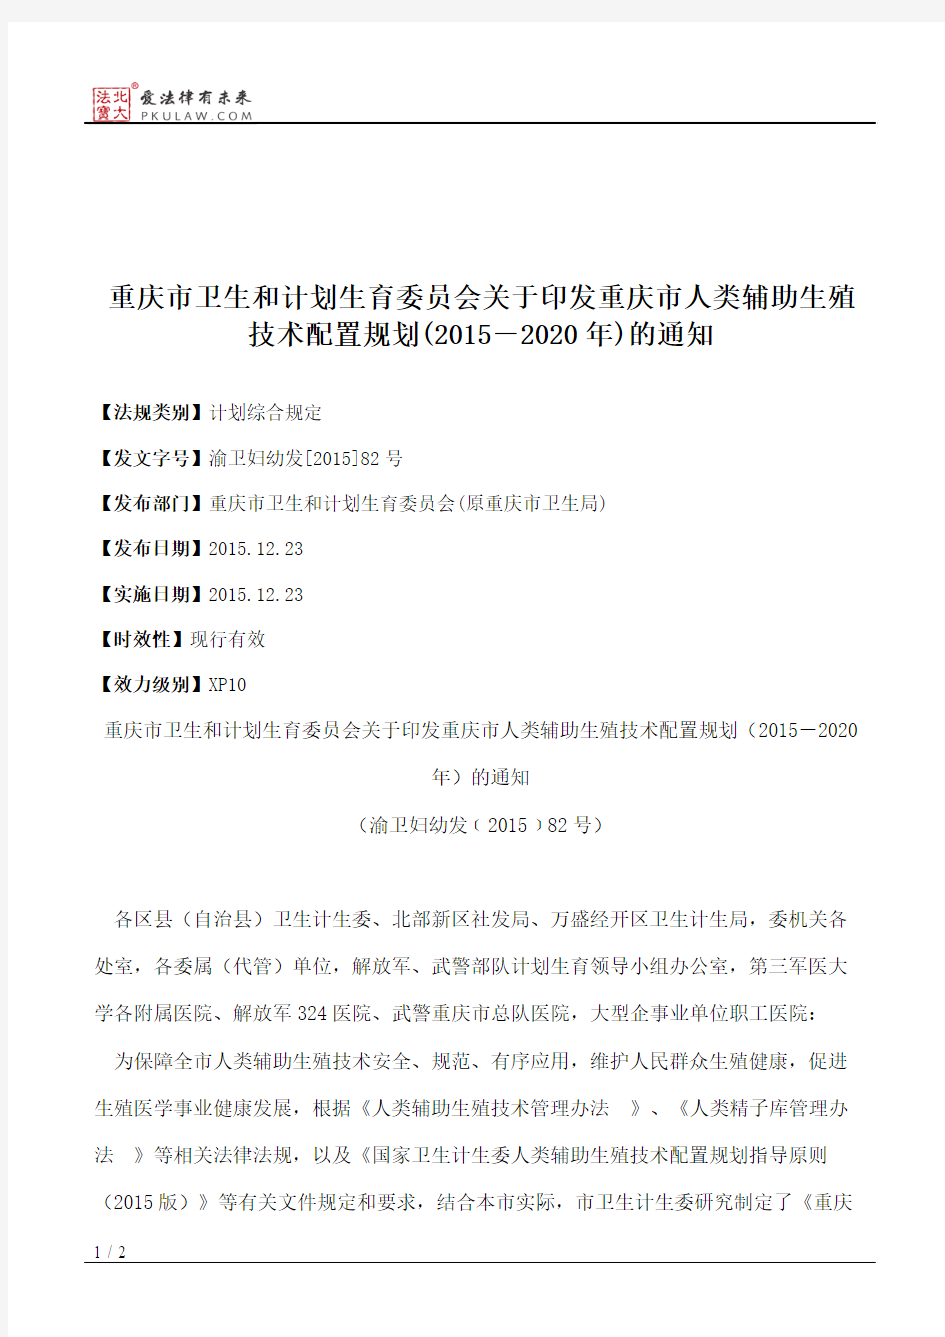 重庆市卫生和计划生育委员会关于印发重庆市人类辅助生殖技术配置